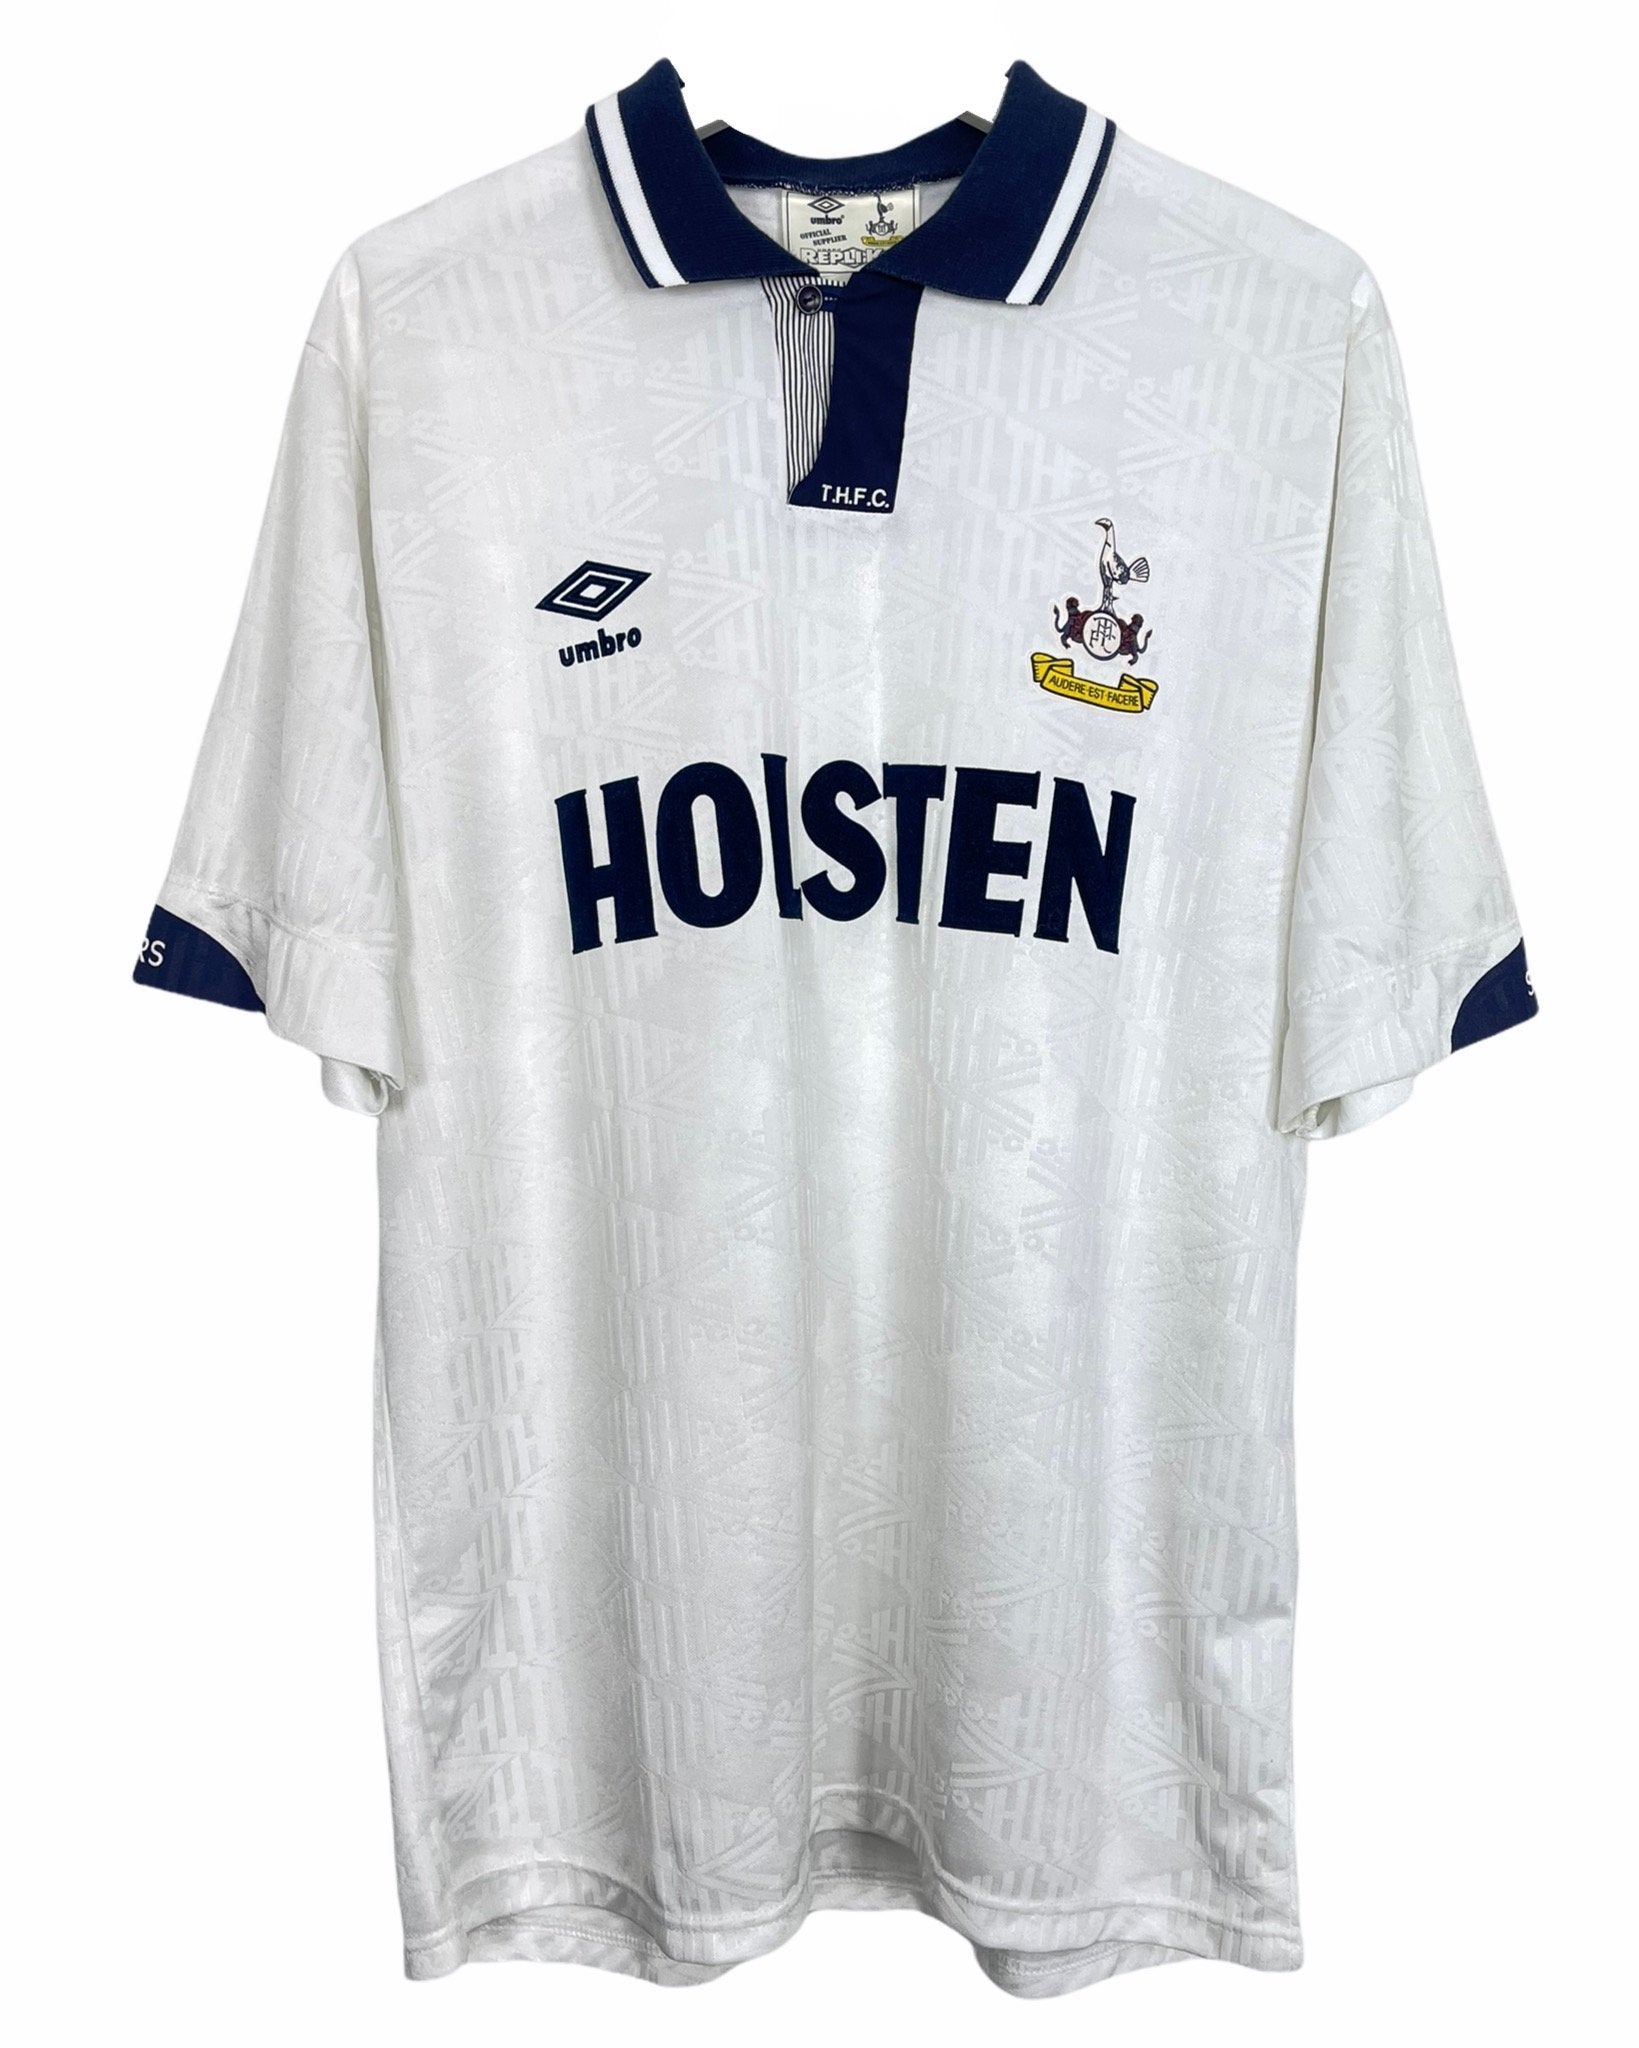  Maillot de football Umbro Maillot de football - Tottenham Hotspur 91' 93' - XL - PLOMOSTORE